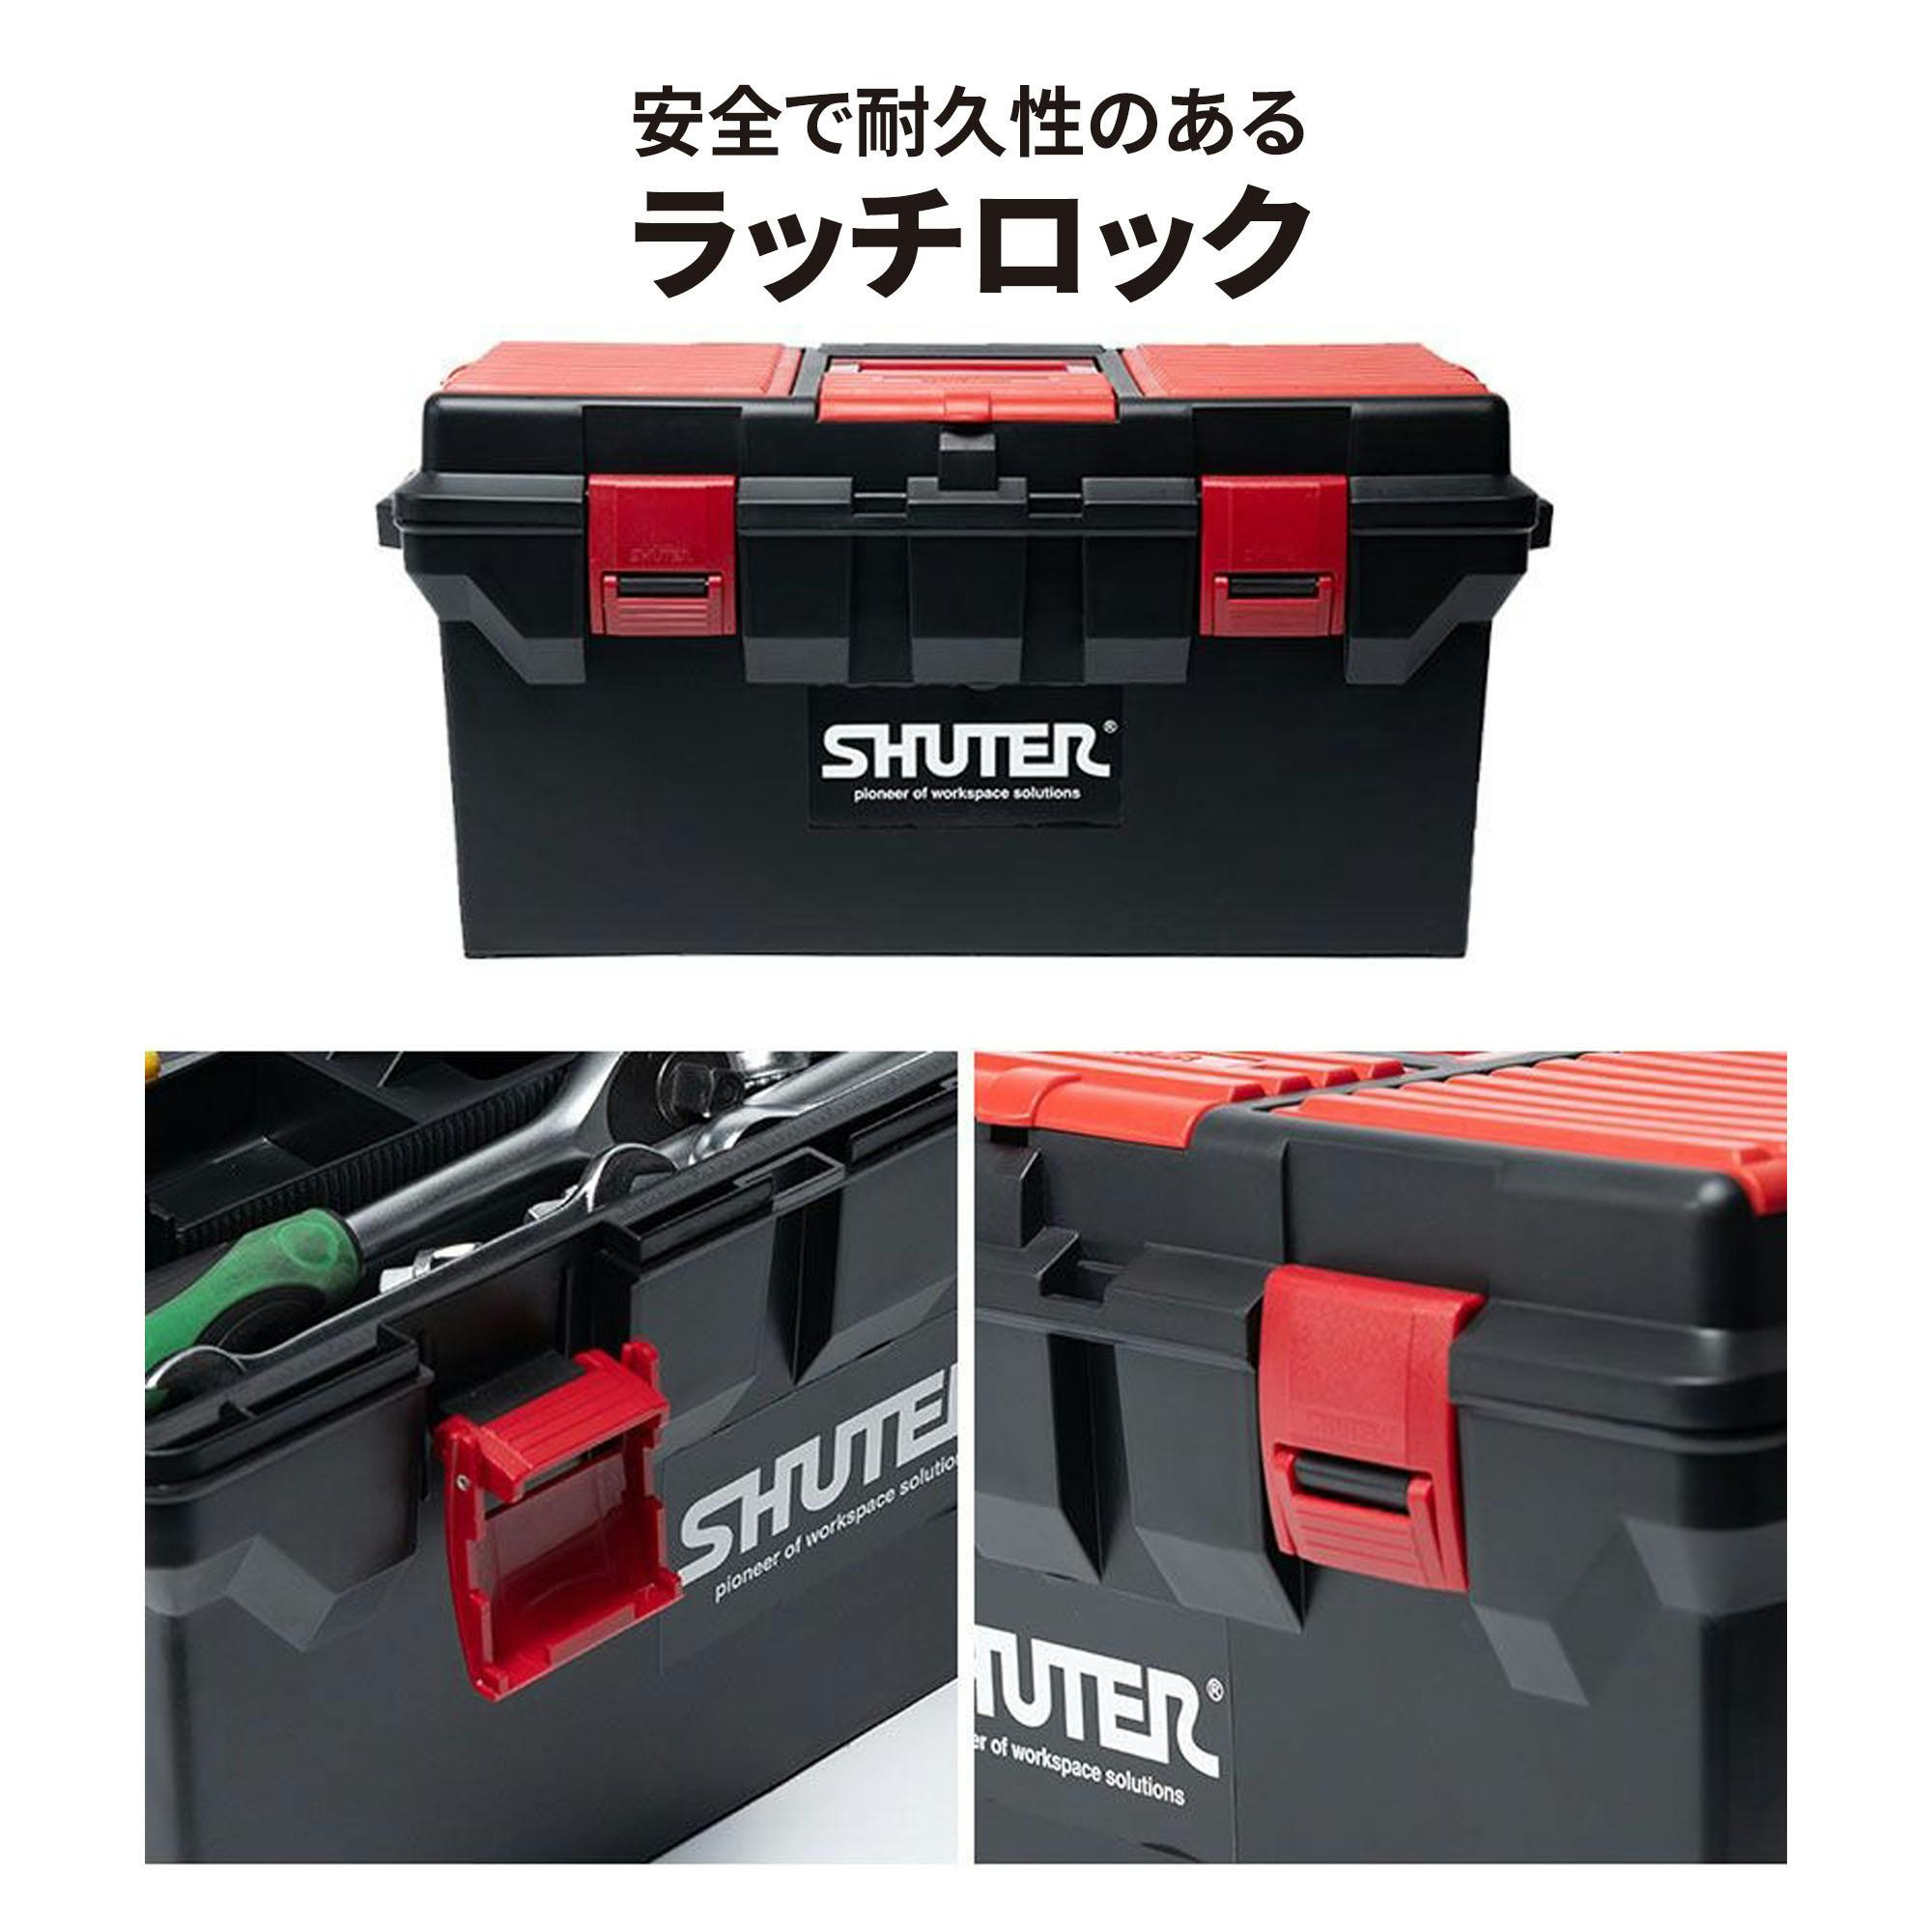 SHUTER デラックスプロフェッショナルツールボックス TB-800 CZ00222 